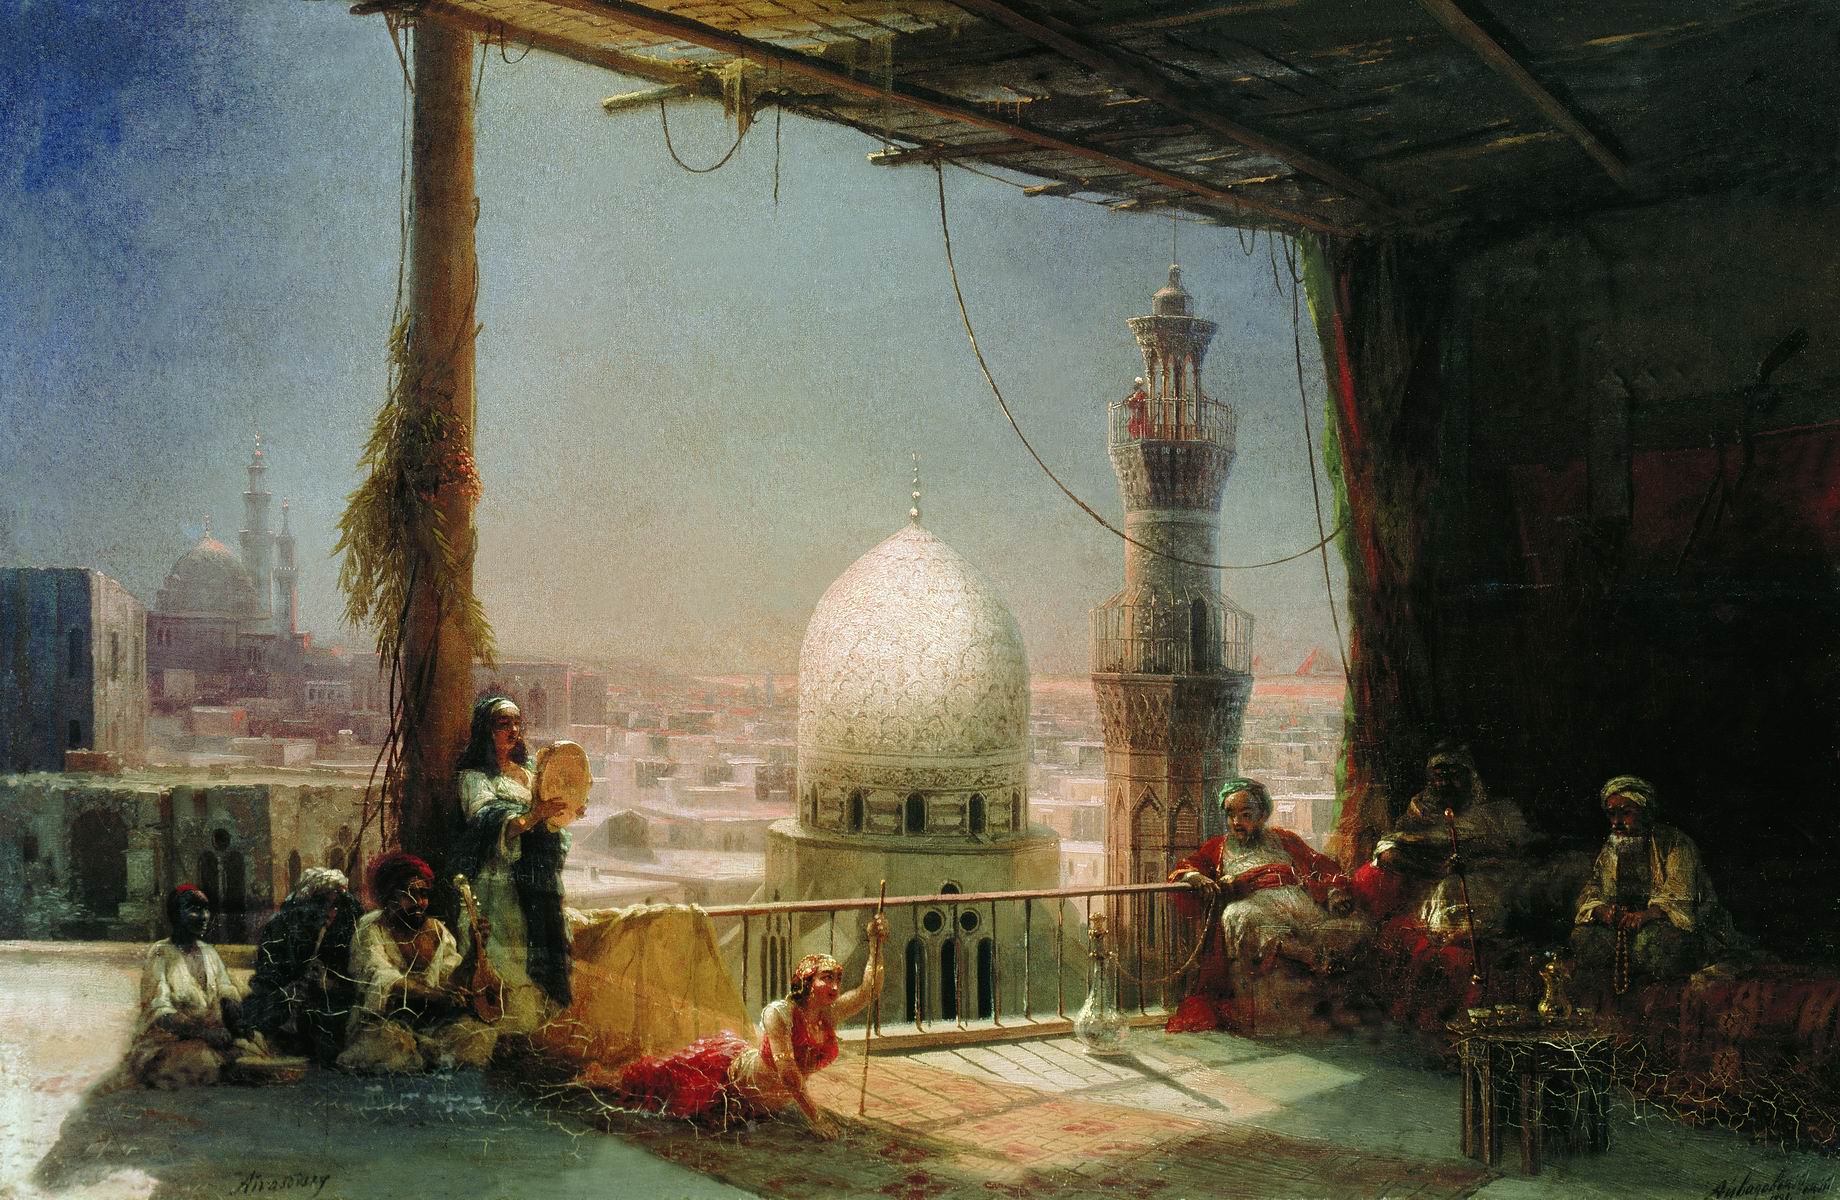 Айвазовский. Сцены из каирской жизни. 1881